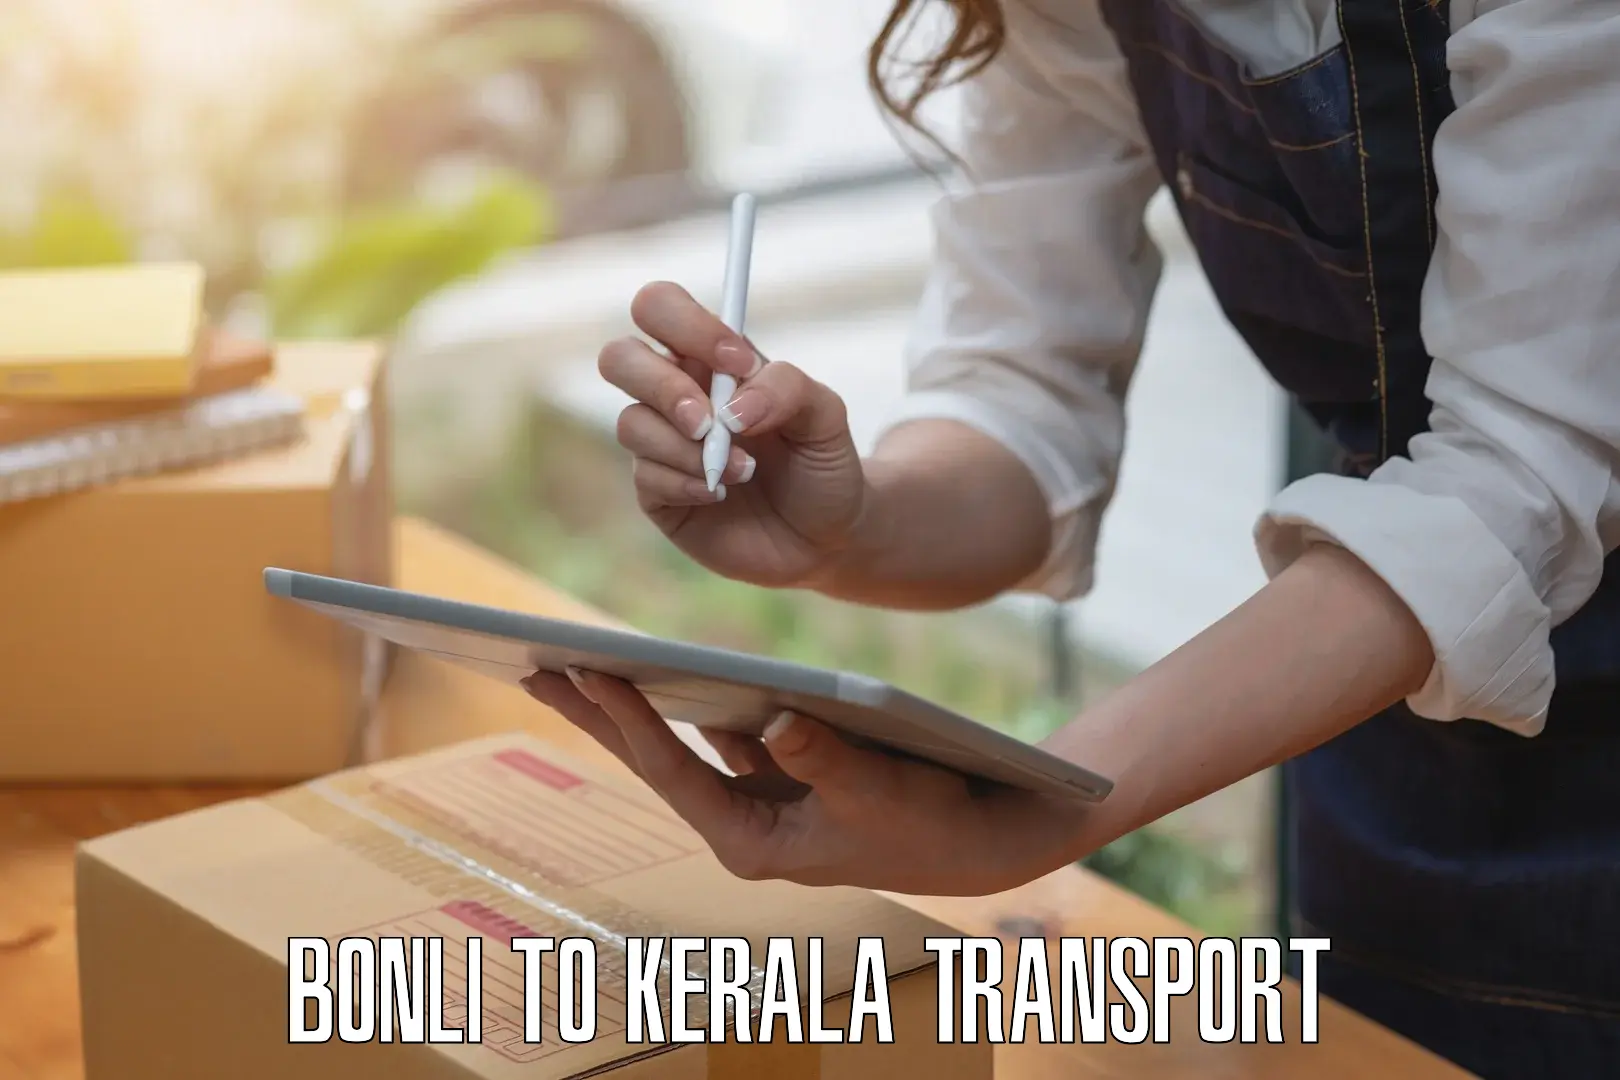 Nearby transport service Bonli to Kerala